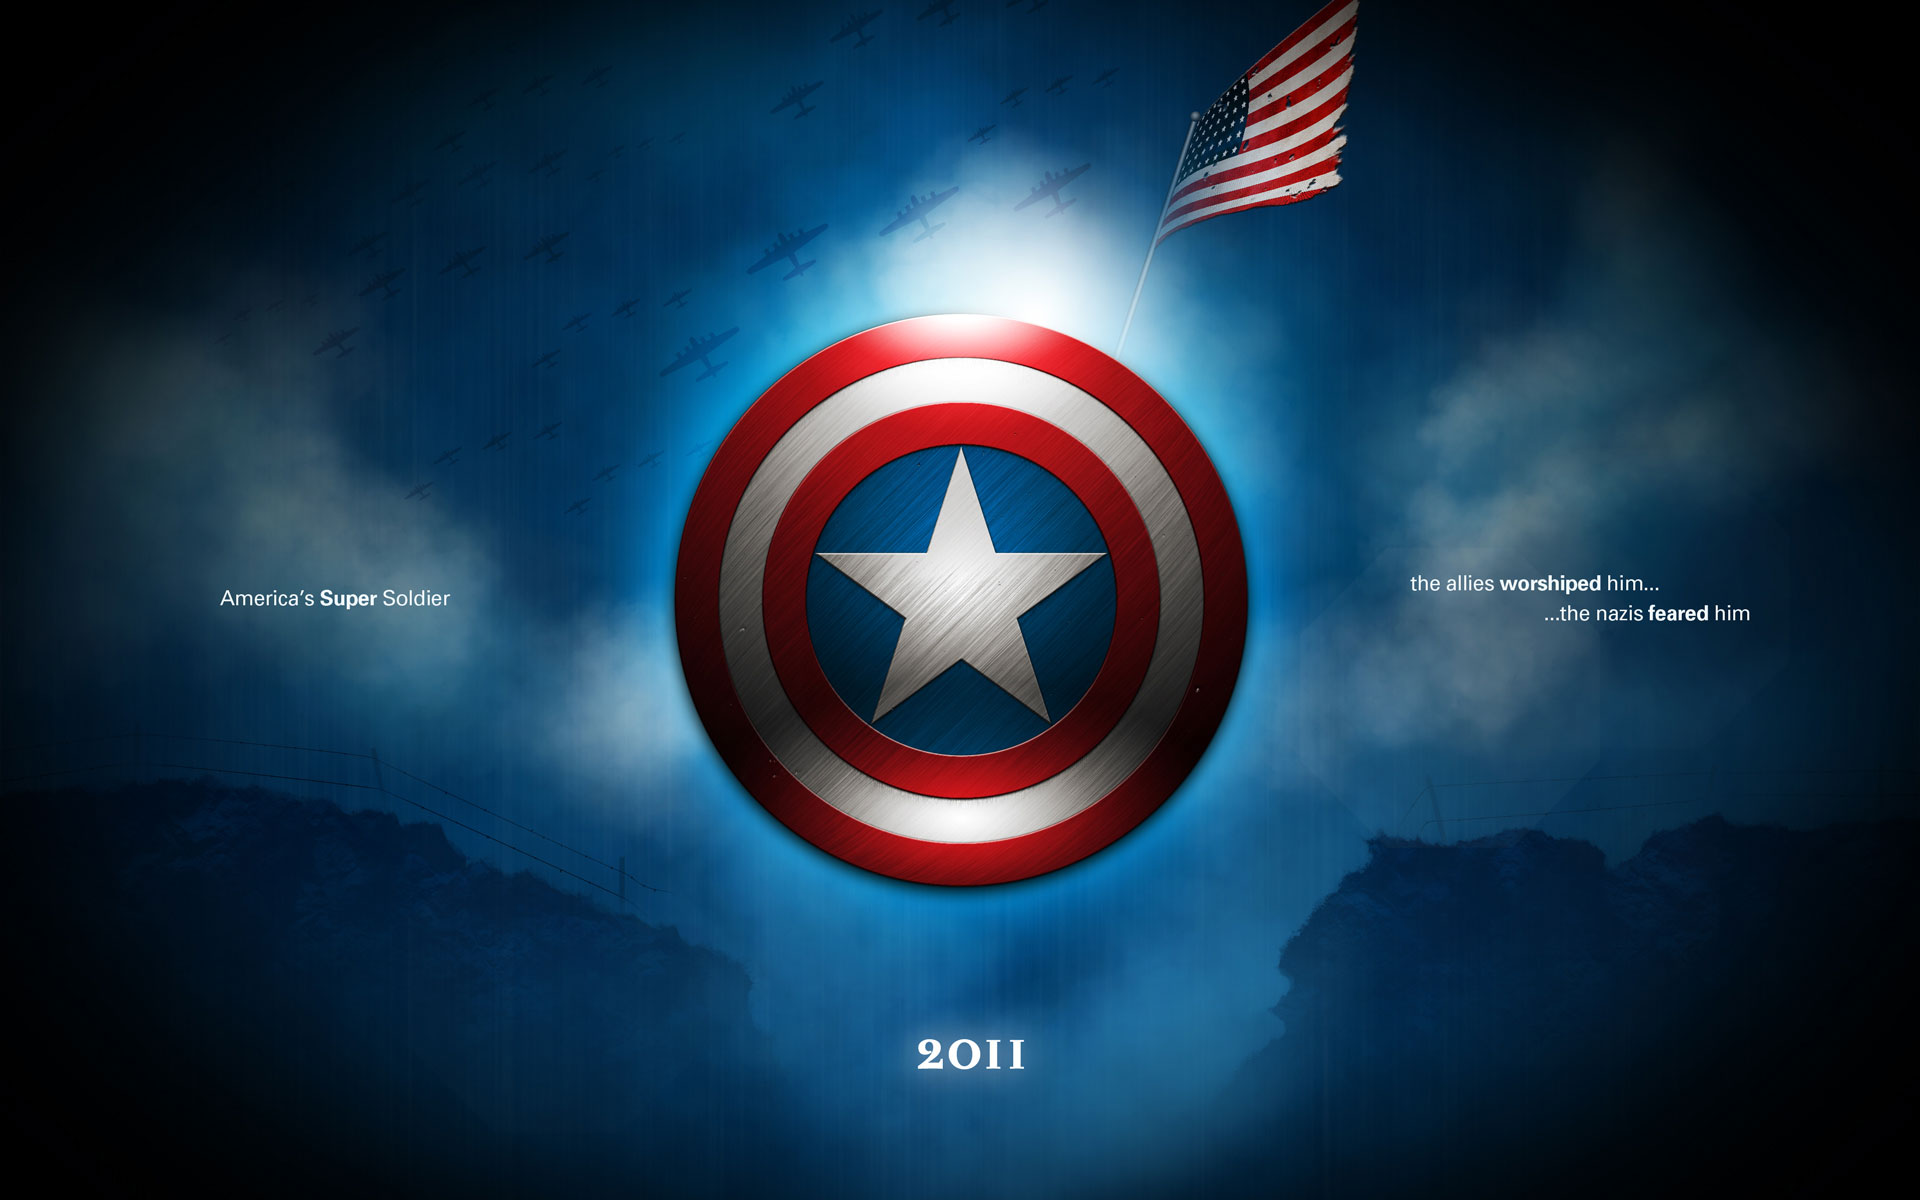 無料モバイル壁紙キャプテン・アメリカ: ザ・ファースト・アベンジャー, キャプテン・アメリカ, 映画をダウンロードします。